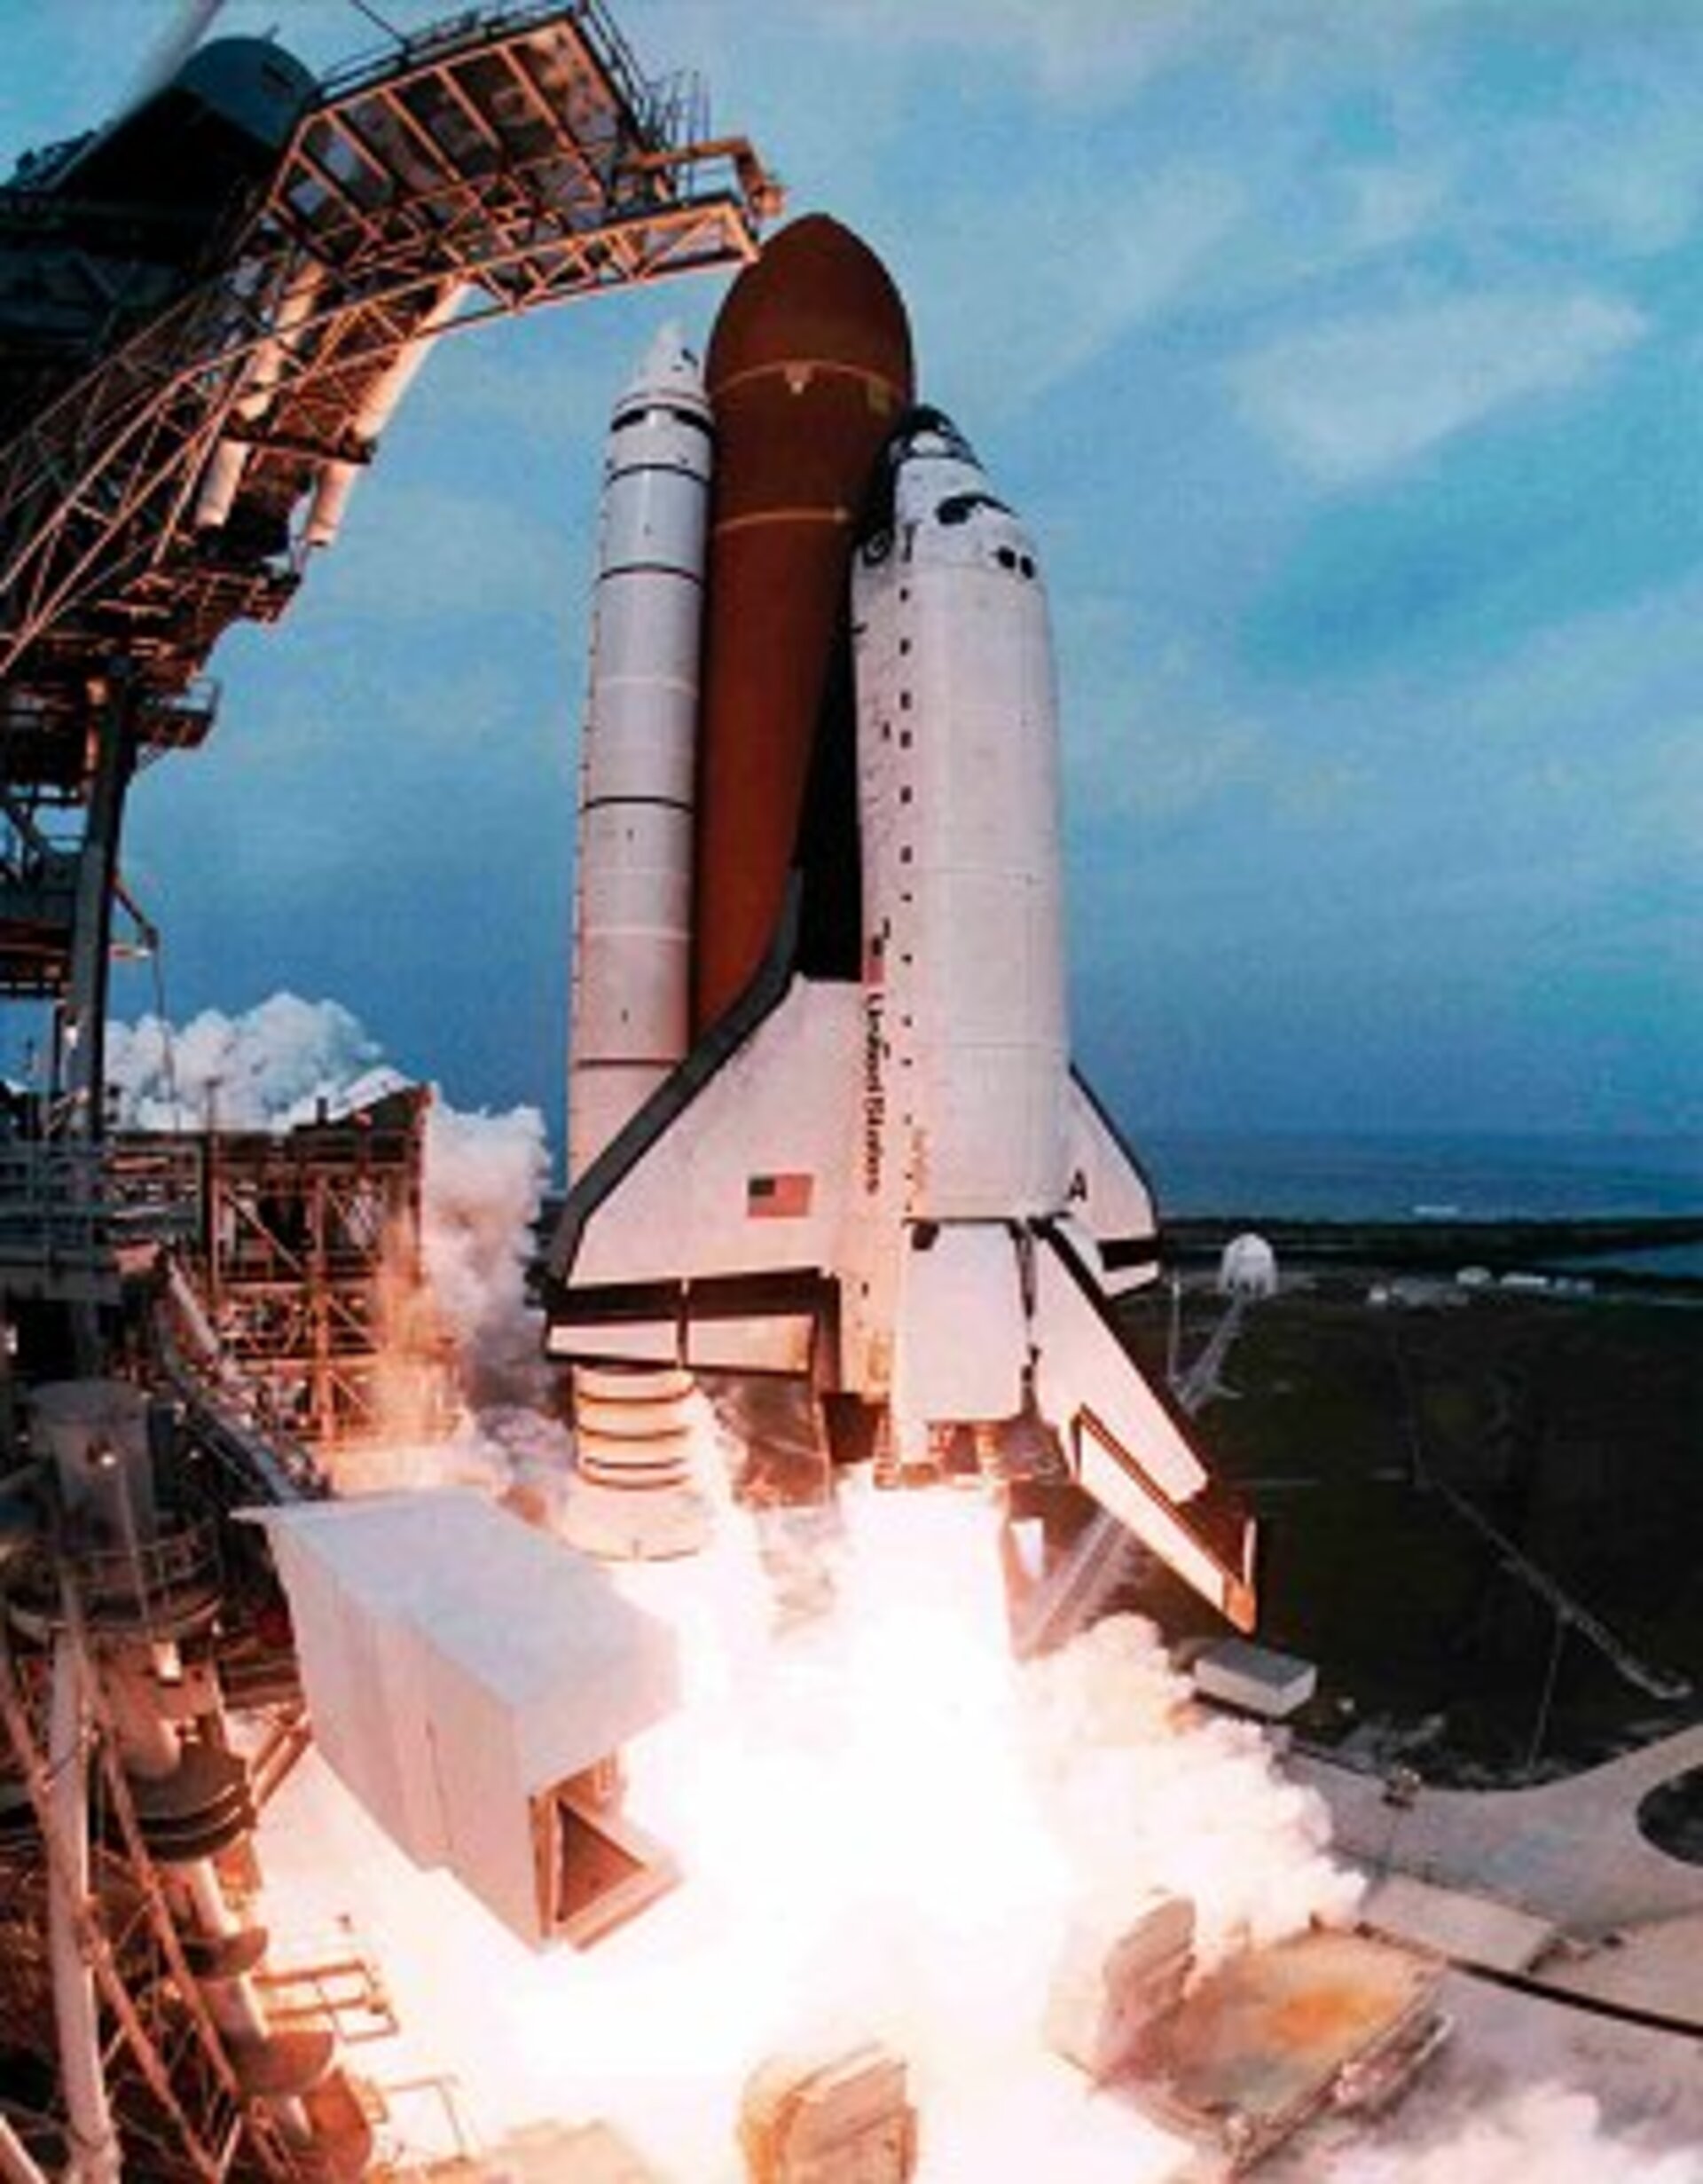 La navetta spaziale Columbia offre a Guidoni la sua prima esperienza di volo spaziale nel 1996, a bordo della missione STS-75.